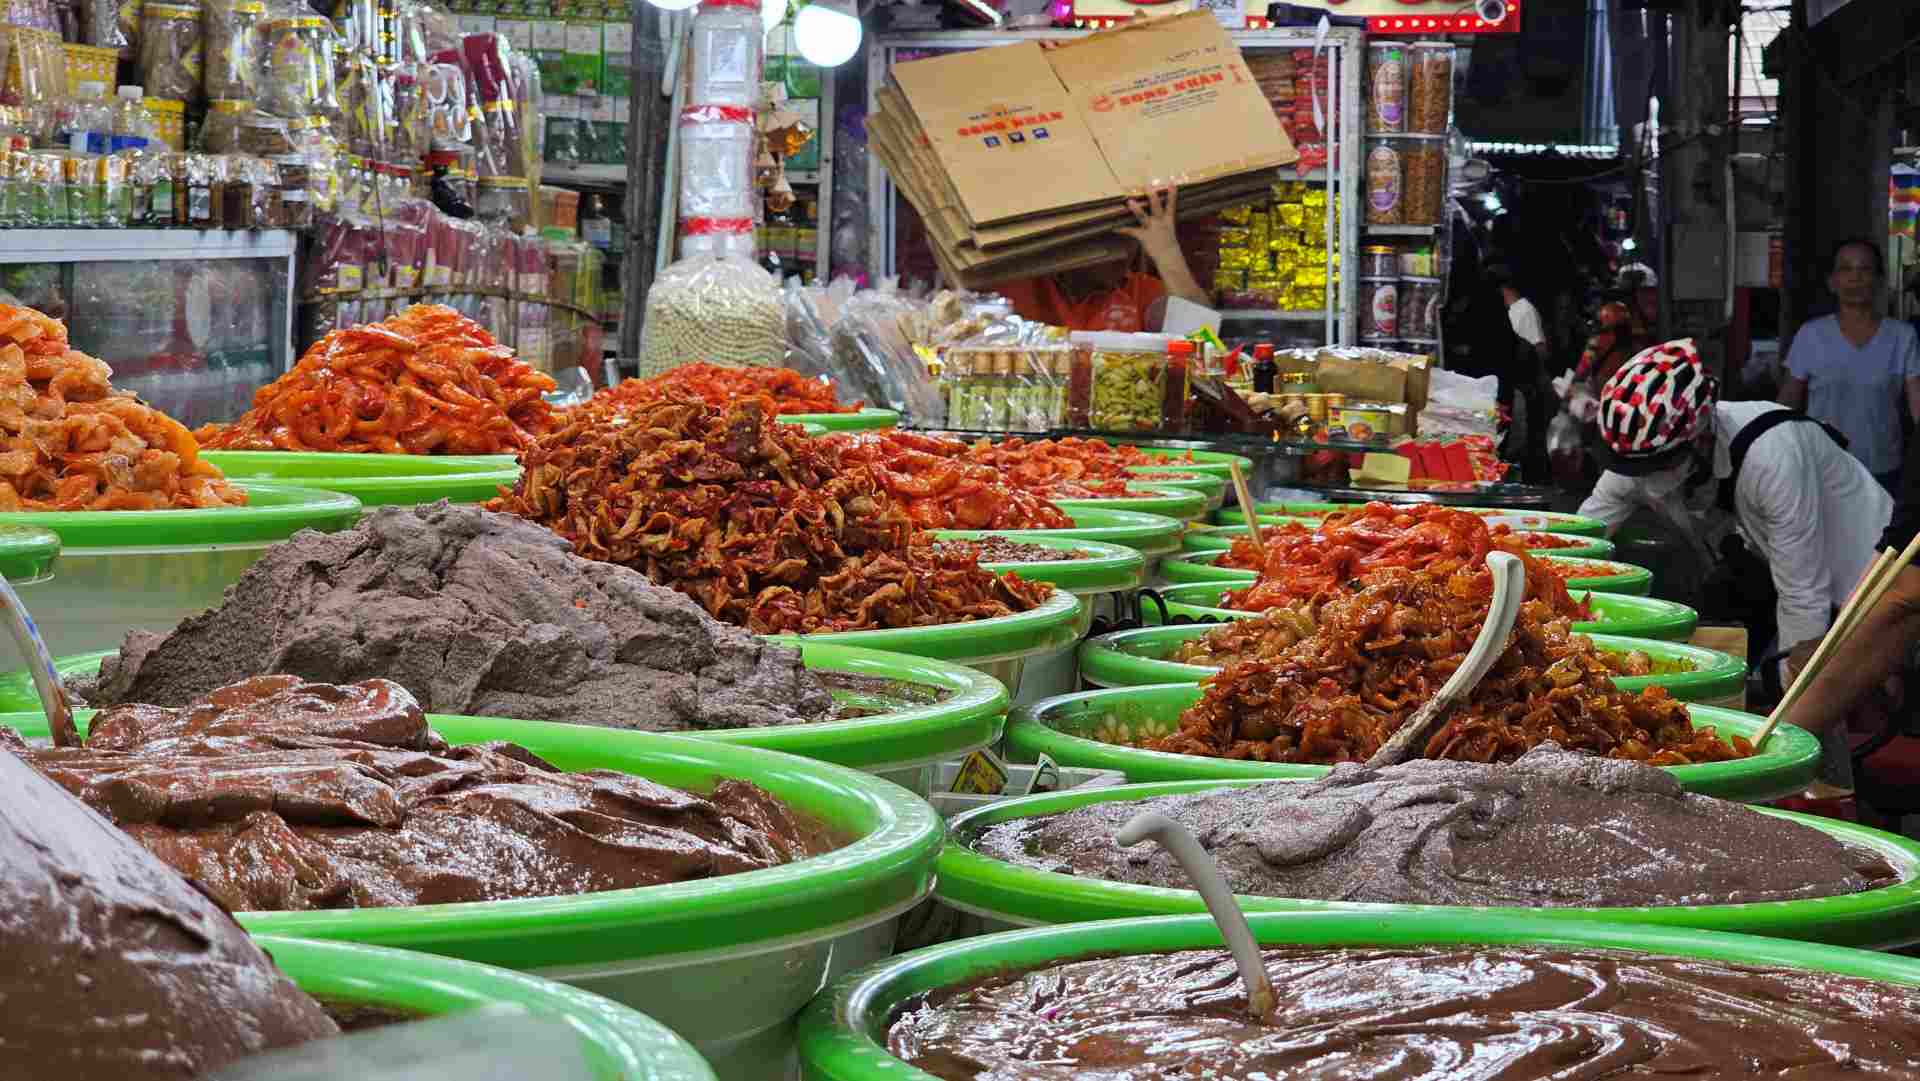 Bên cạnh đó, anh Nguyên Hoàng đến từ Hà Nội cho rằng: “Chợ Đông Ba rất đặc biệt, ấn tượng nhất là các món ăn và các đồ thủ công mỹ nghệ. Trong số những món ăn, tôi thực sự ấn tượng với món chè heo quay, nó không những lạ mà còn ngon”. 